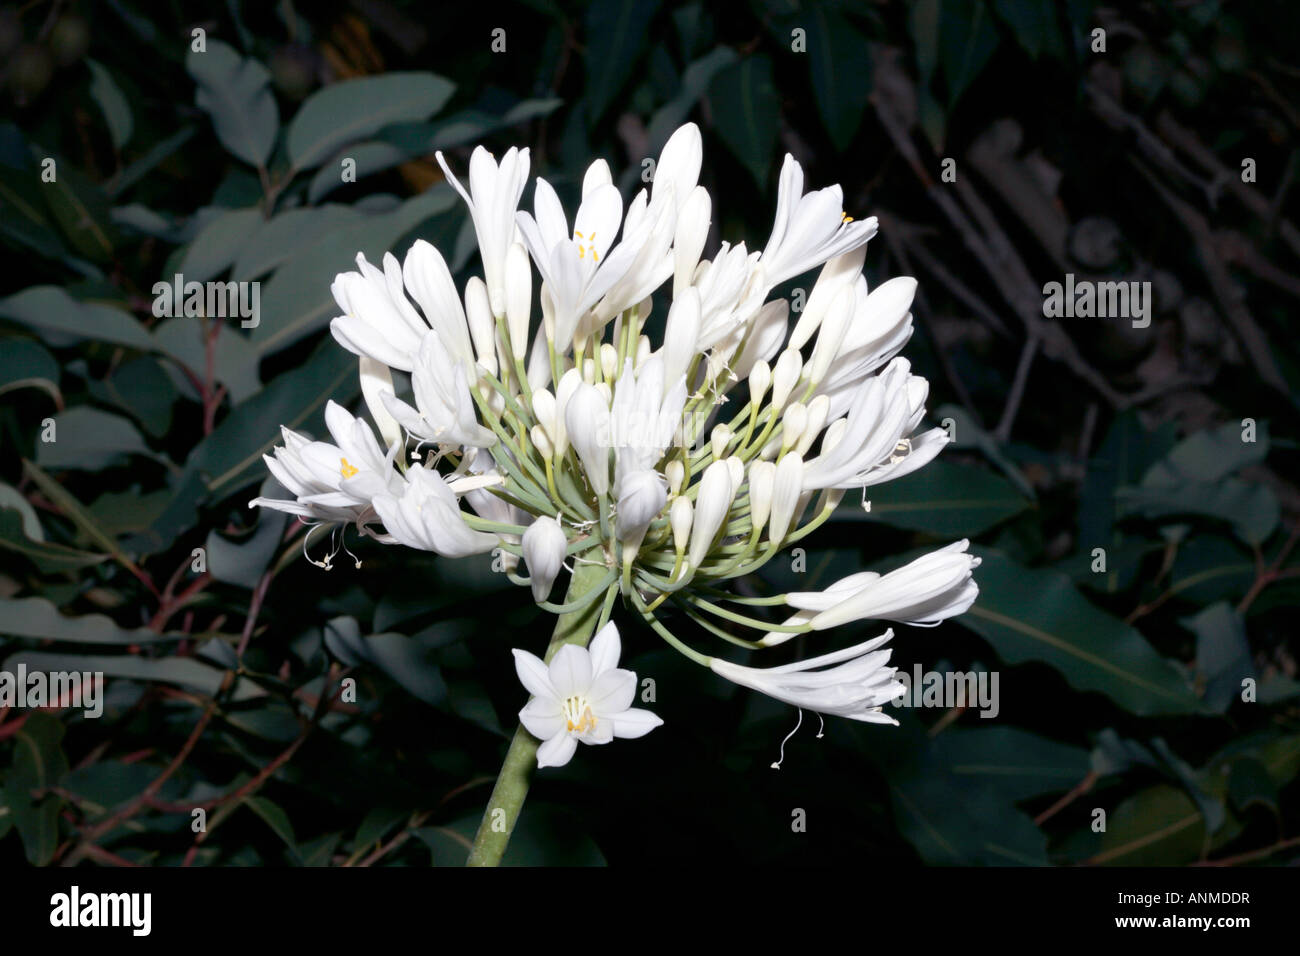 Agapanthus-Agapanthus praecox ssp.orientalis- Family Liliaceae/Alliaceae Stock Photo